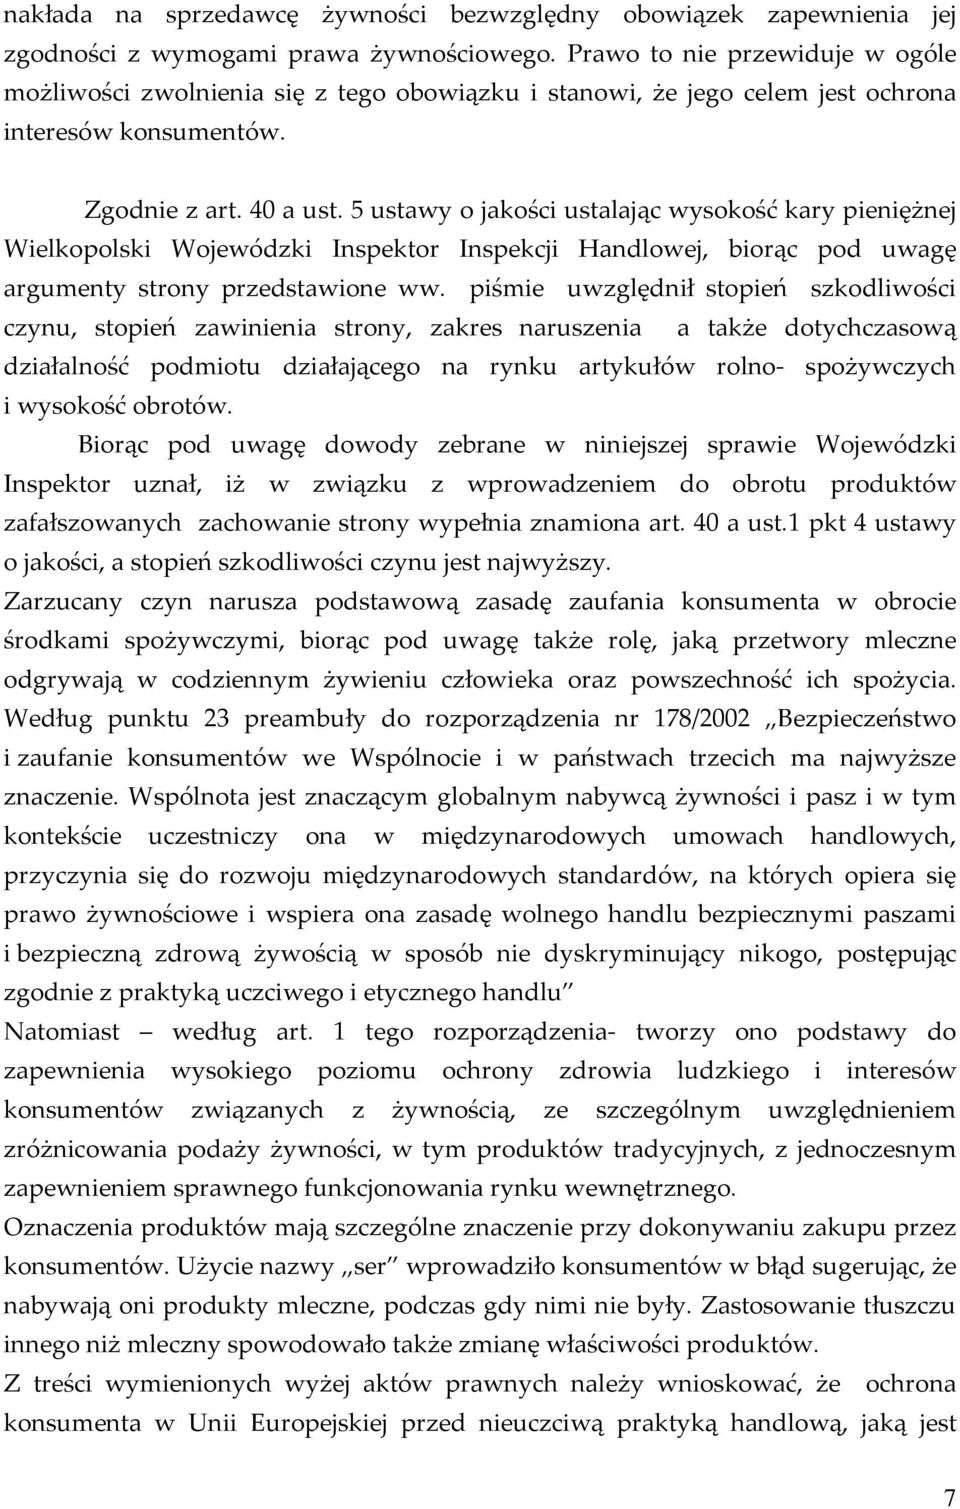 5 ustawy o jakości ustalając wysokość kary pieniężnej Wielkopolski Wojewódzki Inspektor Inspekcji Handlowej, biorąc pod uwagę argumenty strony przedstawione ww.